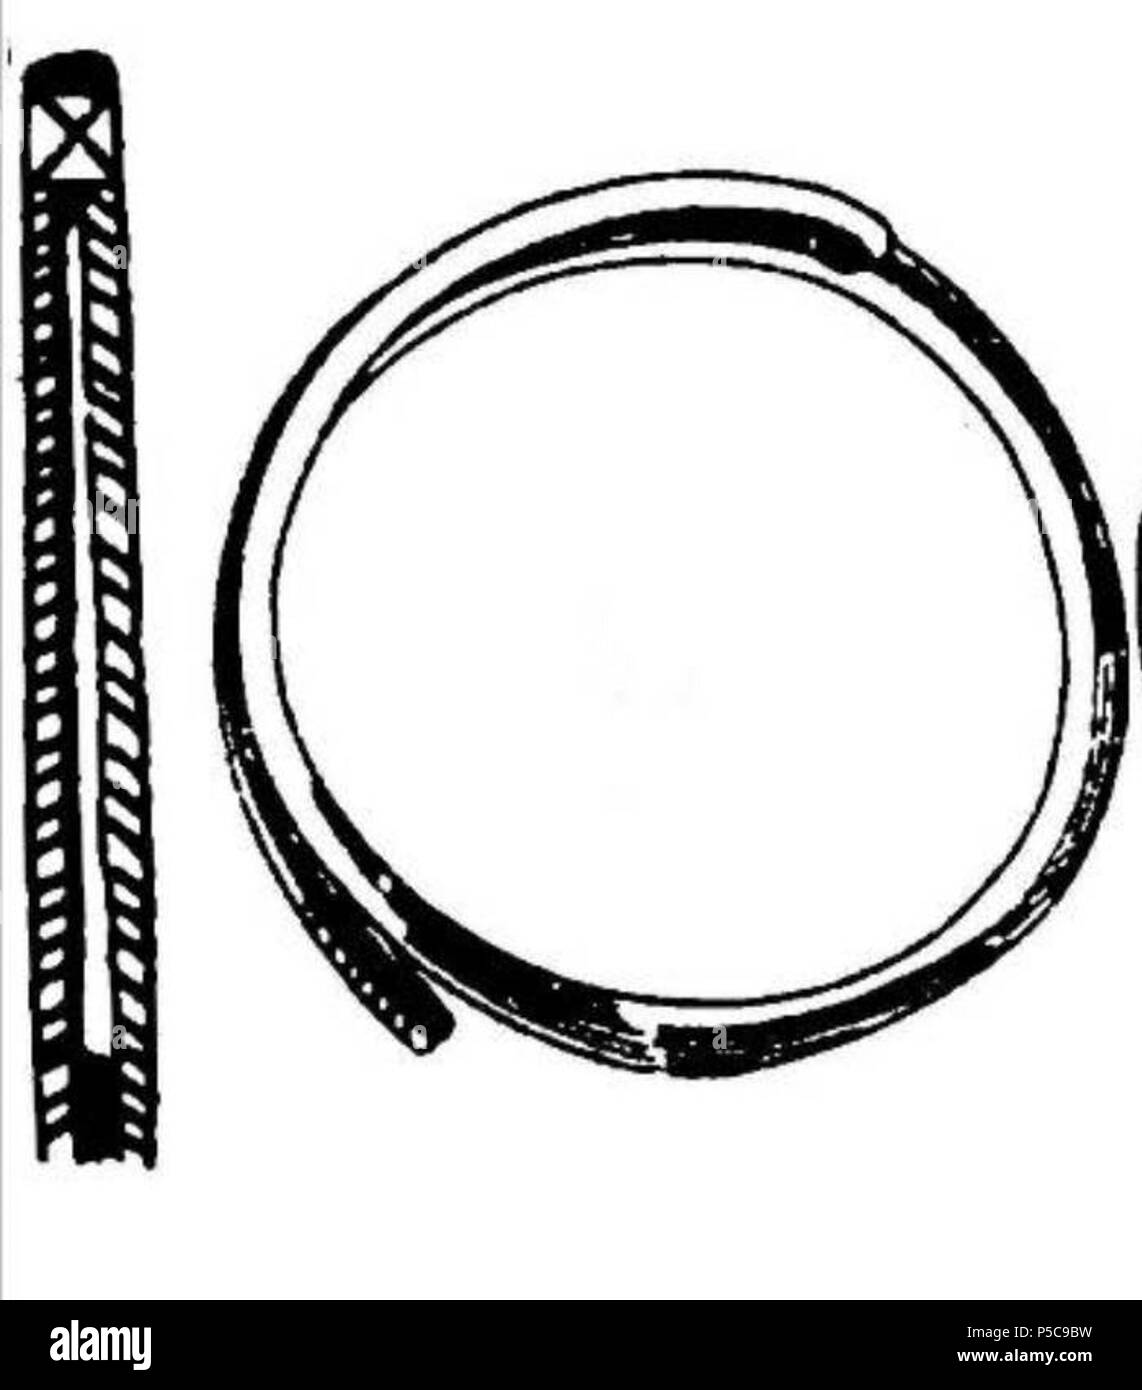 N/A. Anglais : découvertes archéologiques antiques : bracelets avec extrémités overlaping ; ancien bracelet de type Dacia Slimnic selon Popescu Dorin (1941) Historien . 23 juillet 2011, 16:35 (UTC). 7-8-10-11-13-14 .jpg : Römer Floris Ferencz (1815-1889) instruments : Boldwin (talk) 405 72038 type bracelet Slimnic5 Banque D'Images